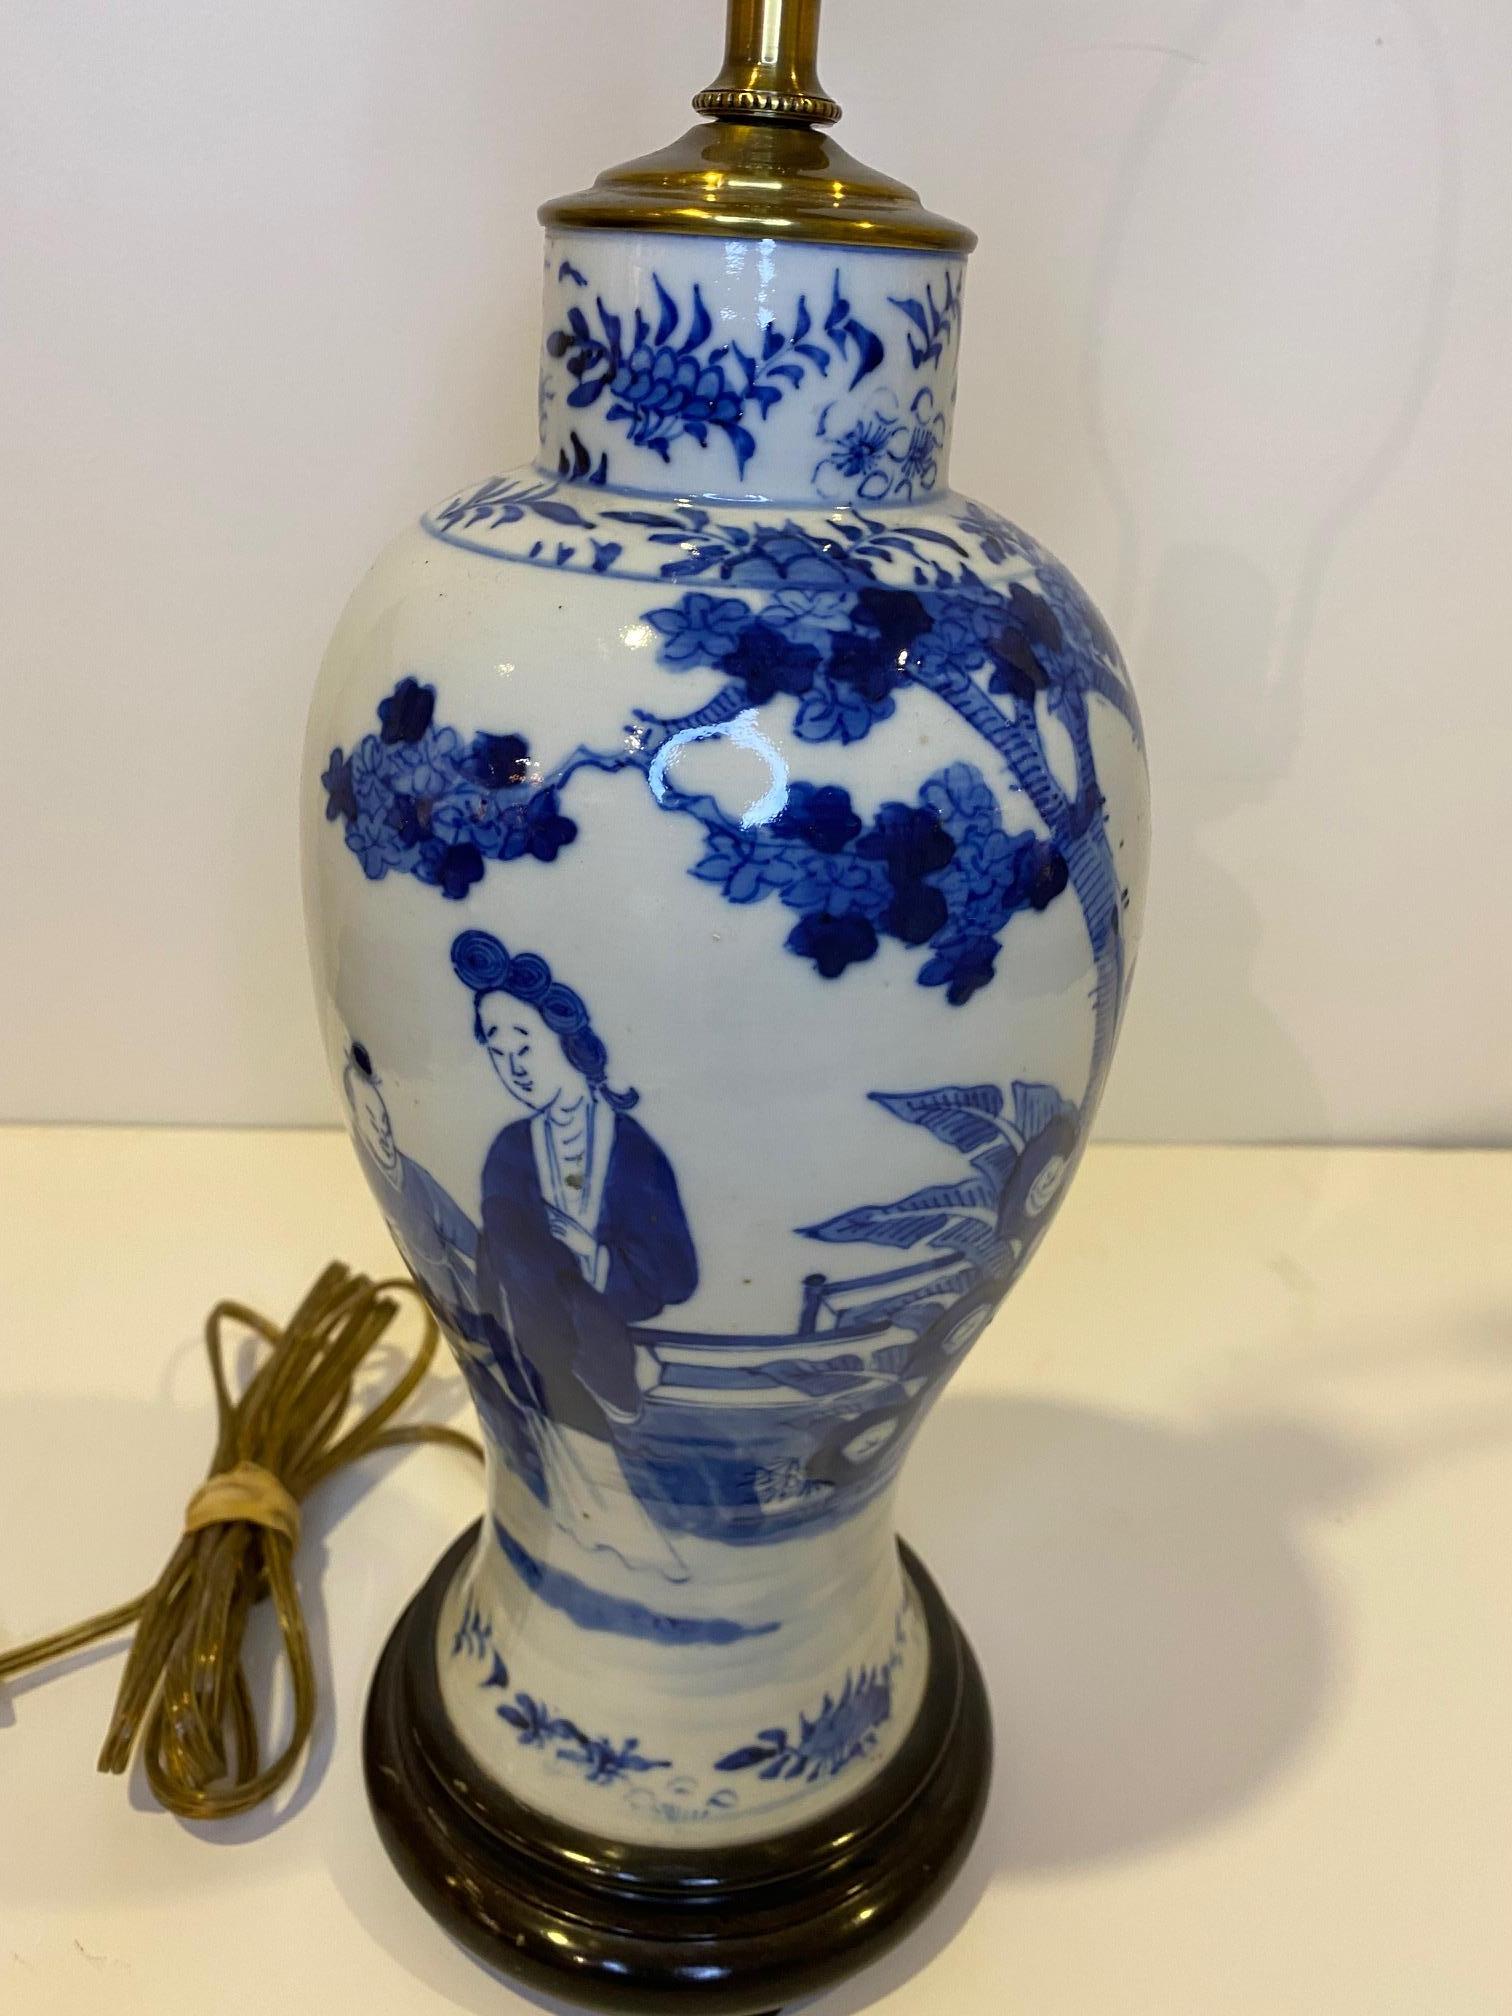 Charmante lampe-vase ancienne en porcelaine chinoise bleue et blanche avec base en bois tourné. 